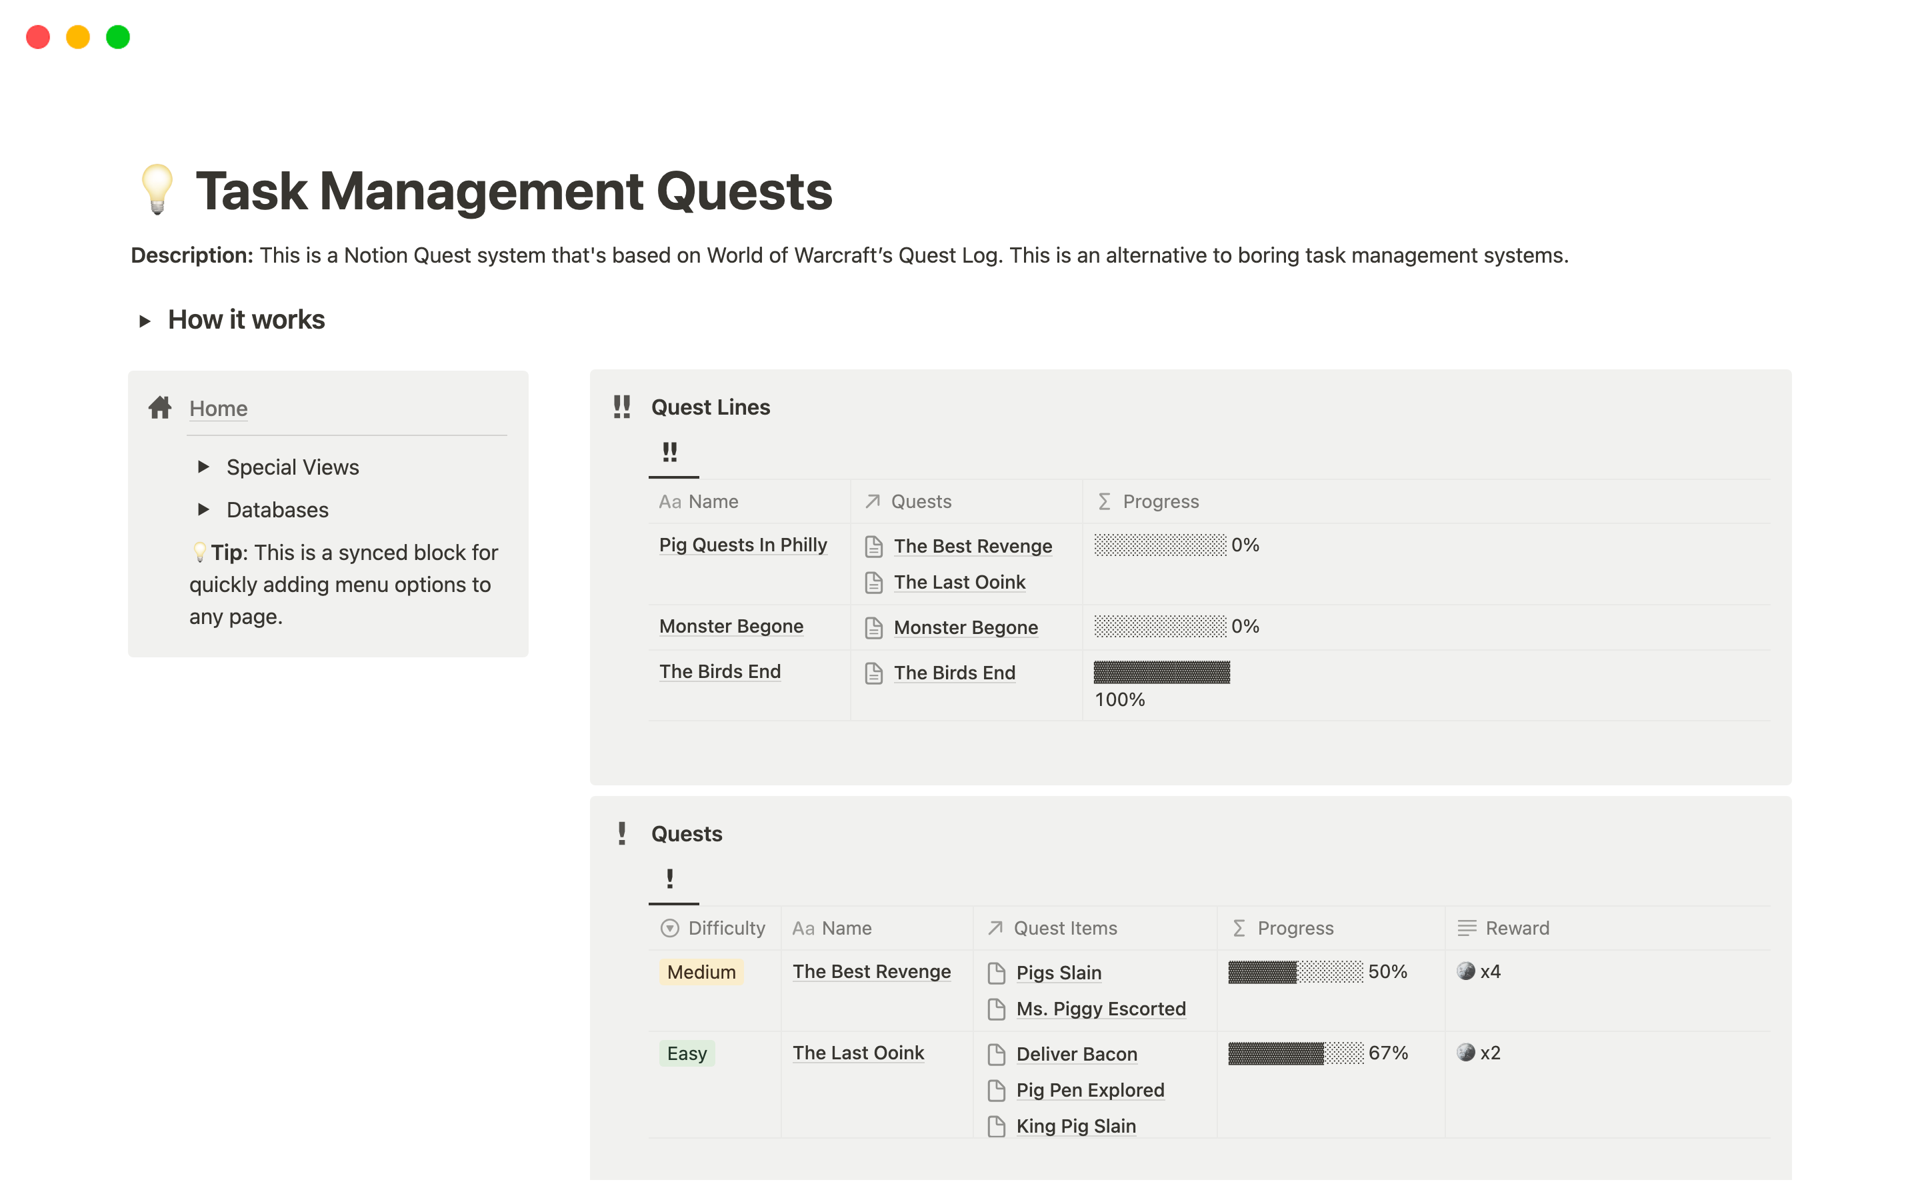 Uma prévia do modelo para Task Management Quests